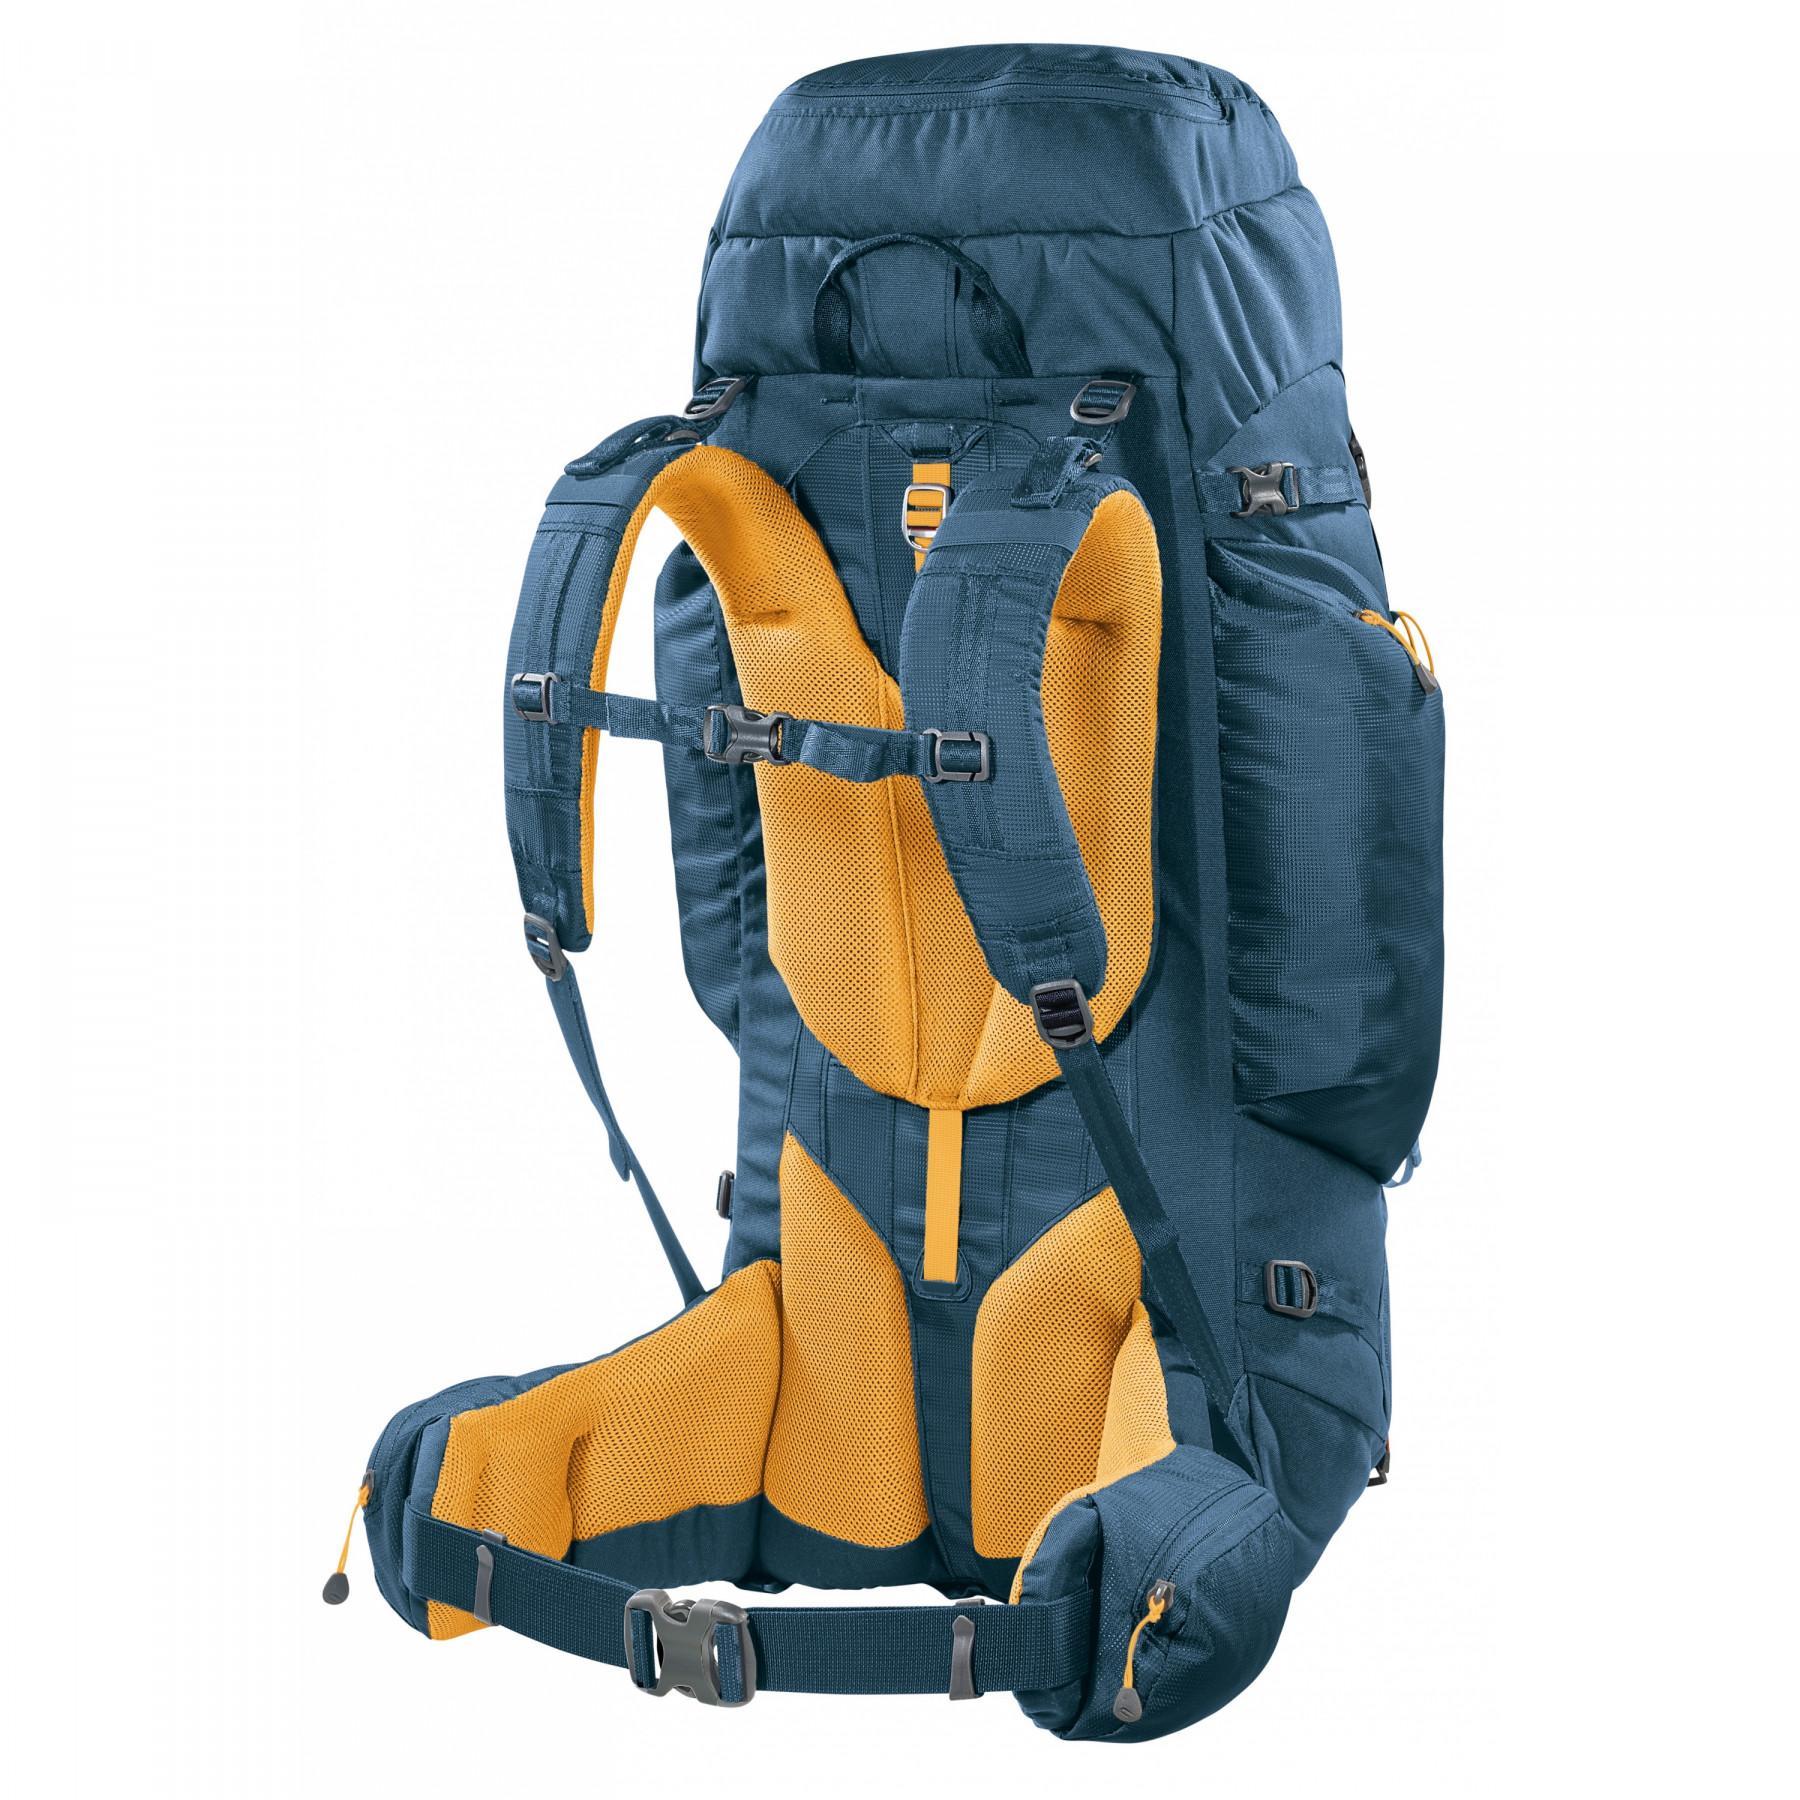 Backpack Ferrino transalp 60L